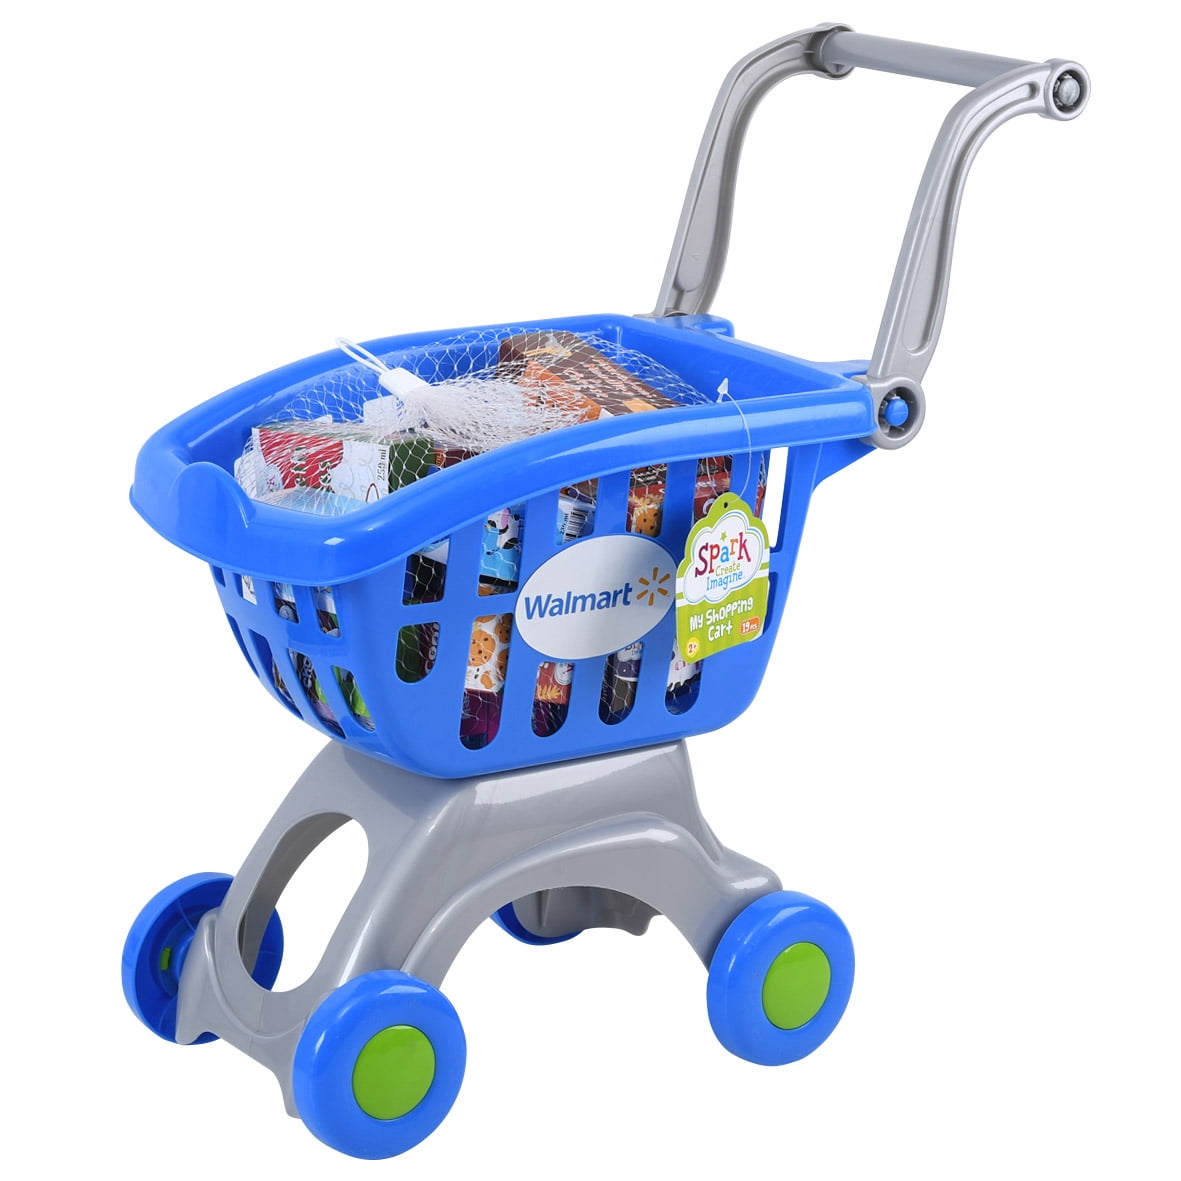 URBN Toys Plastic Shopping Trolley Blue